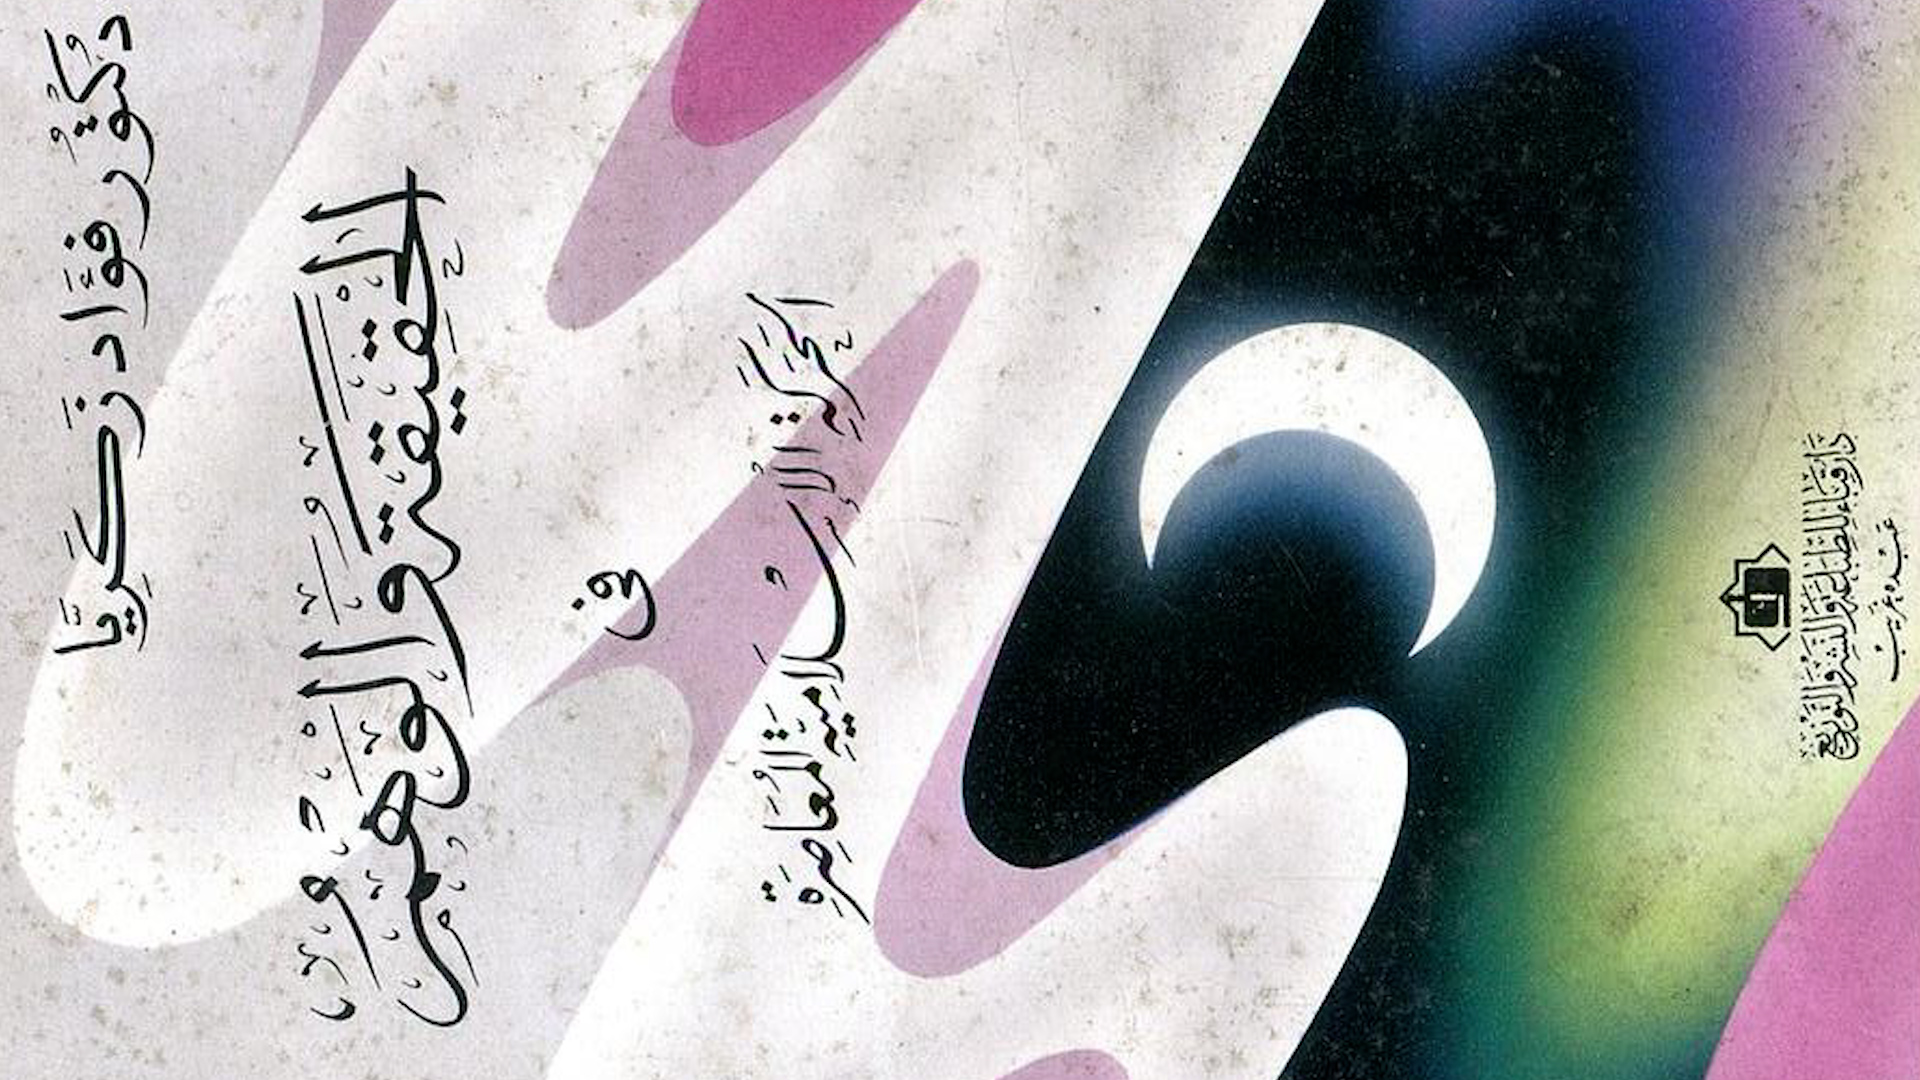  غلاف كتاب "الحقيقة والوهم في الحركة الإسلامية المعاصرة" للمفكر اليساري المصري فؤاد زكريا.